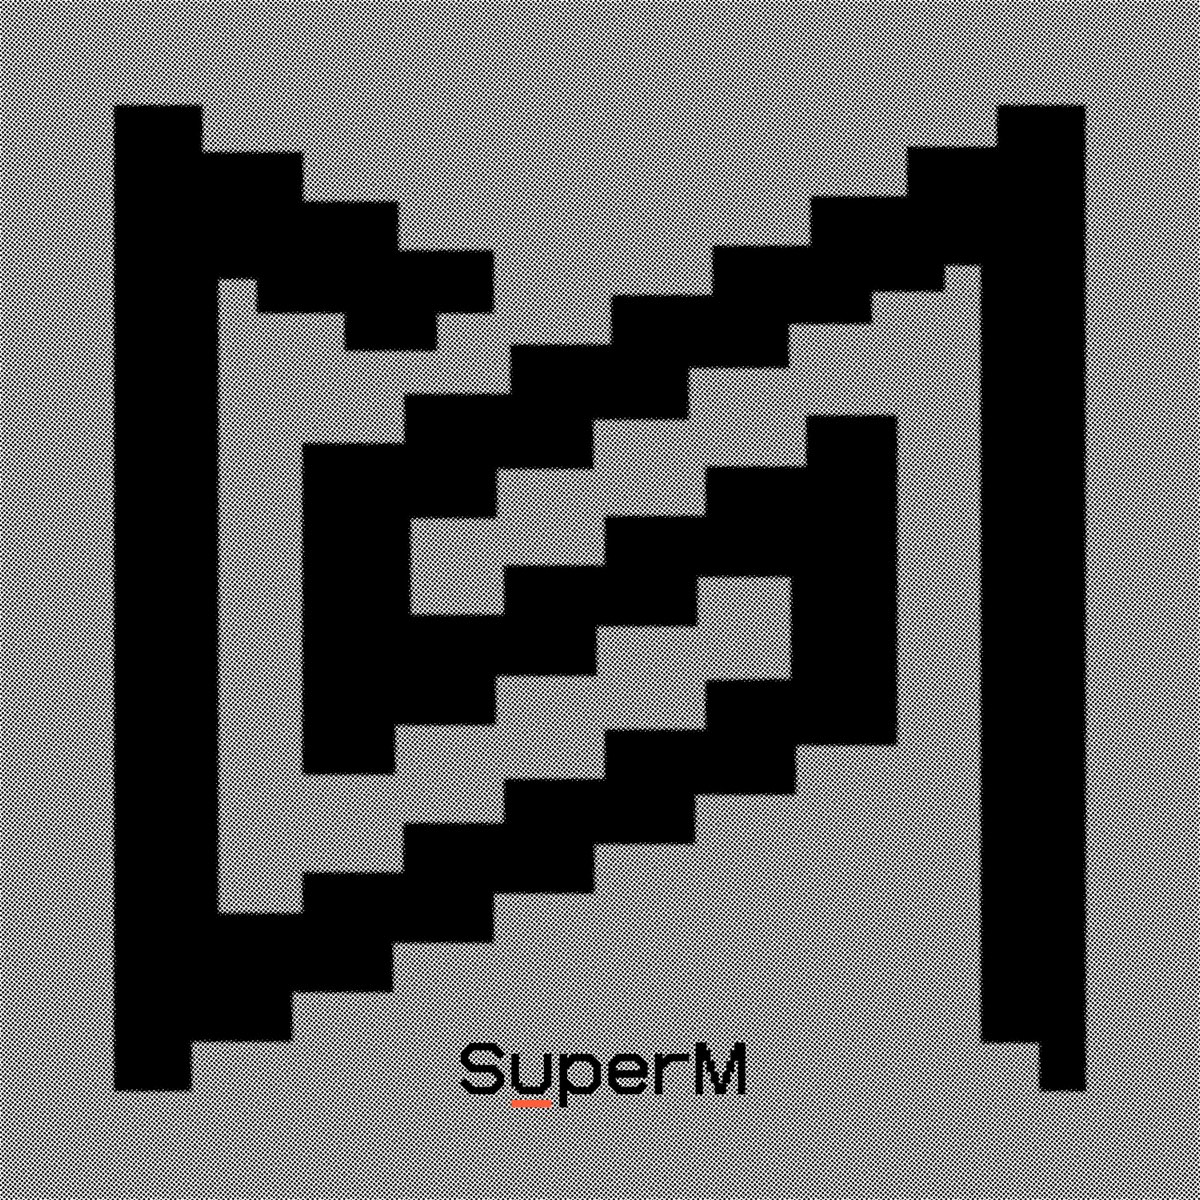 SuperM — Drip cover artwork